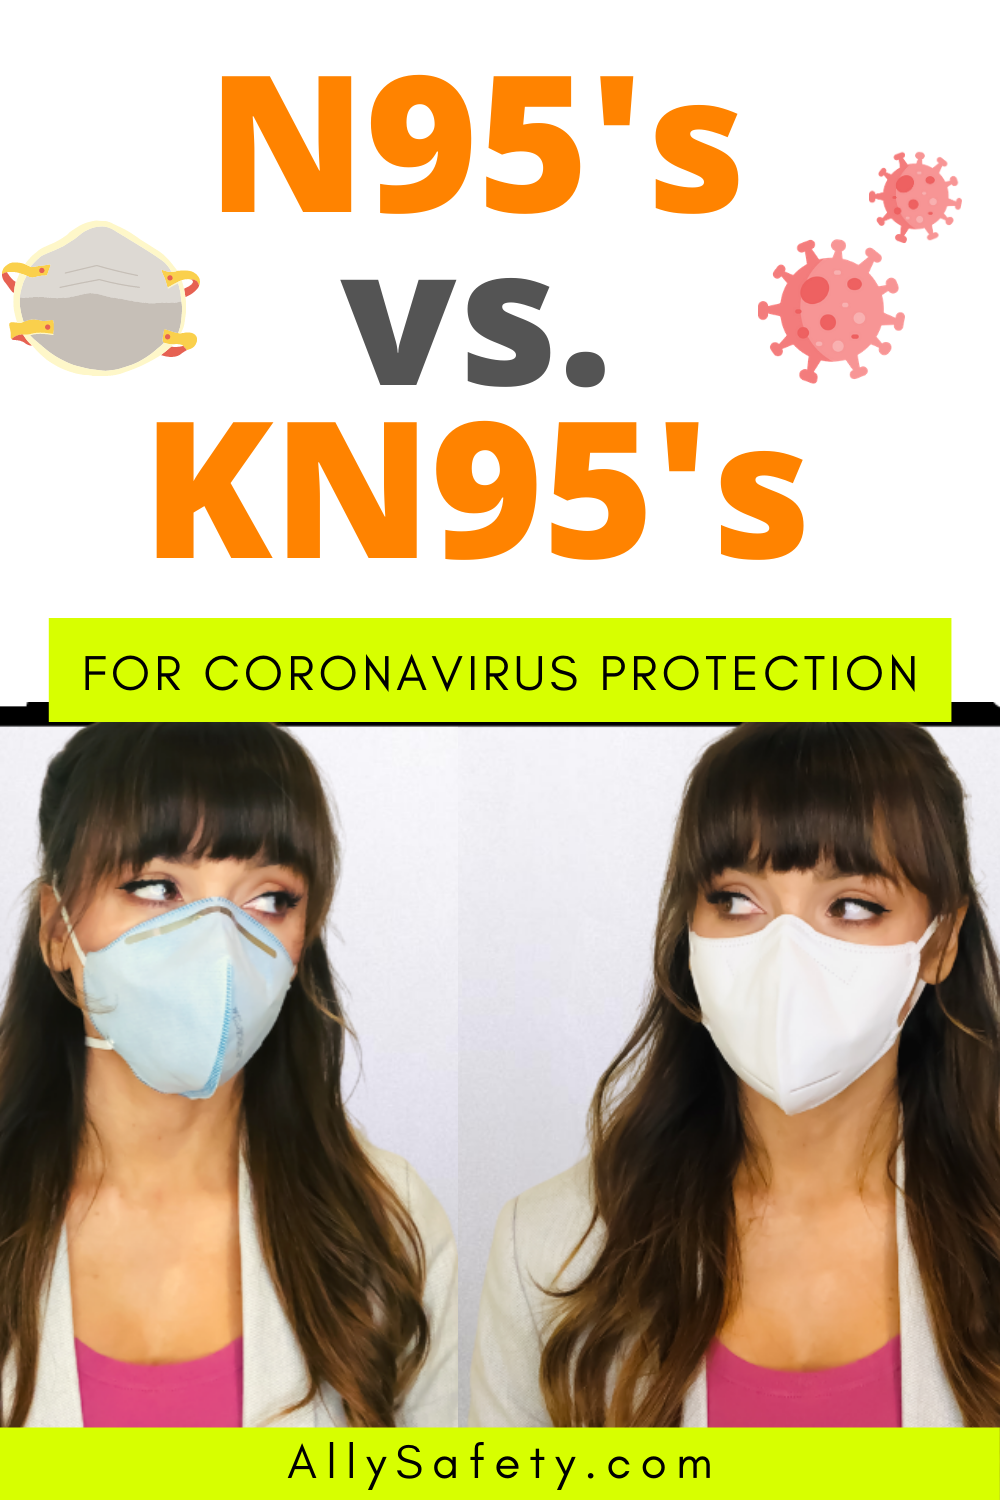 N95's vs. KN95's for Coronavirus Protection